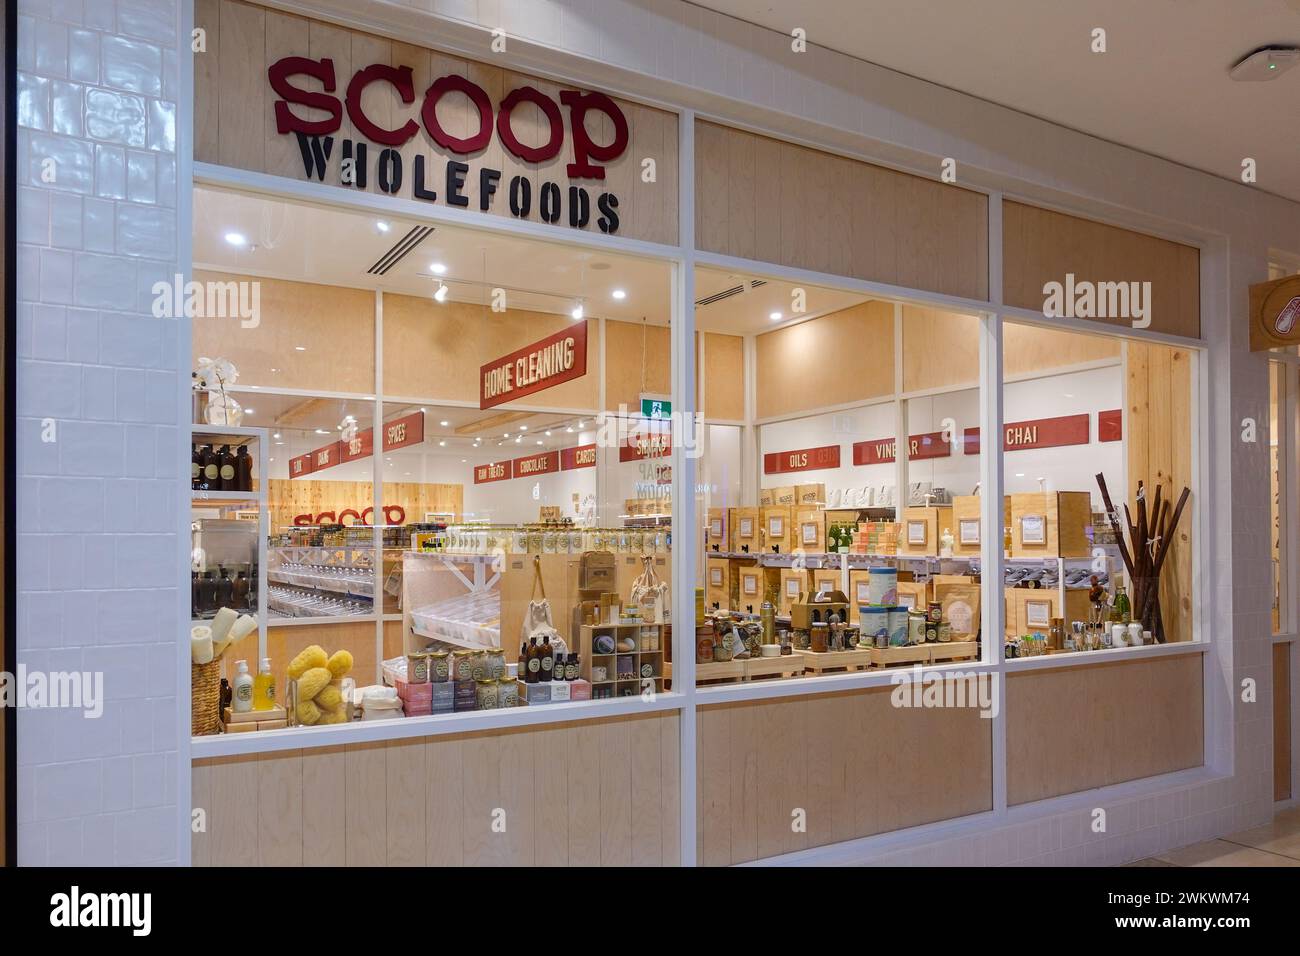 Scoop Wholefoods è un negozio ecologico in Australia che offre un'ampia gamma di alimenti biologici e naturali a prezzi ragionevoli. Foto Stock